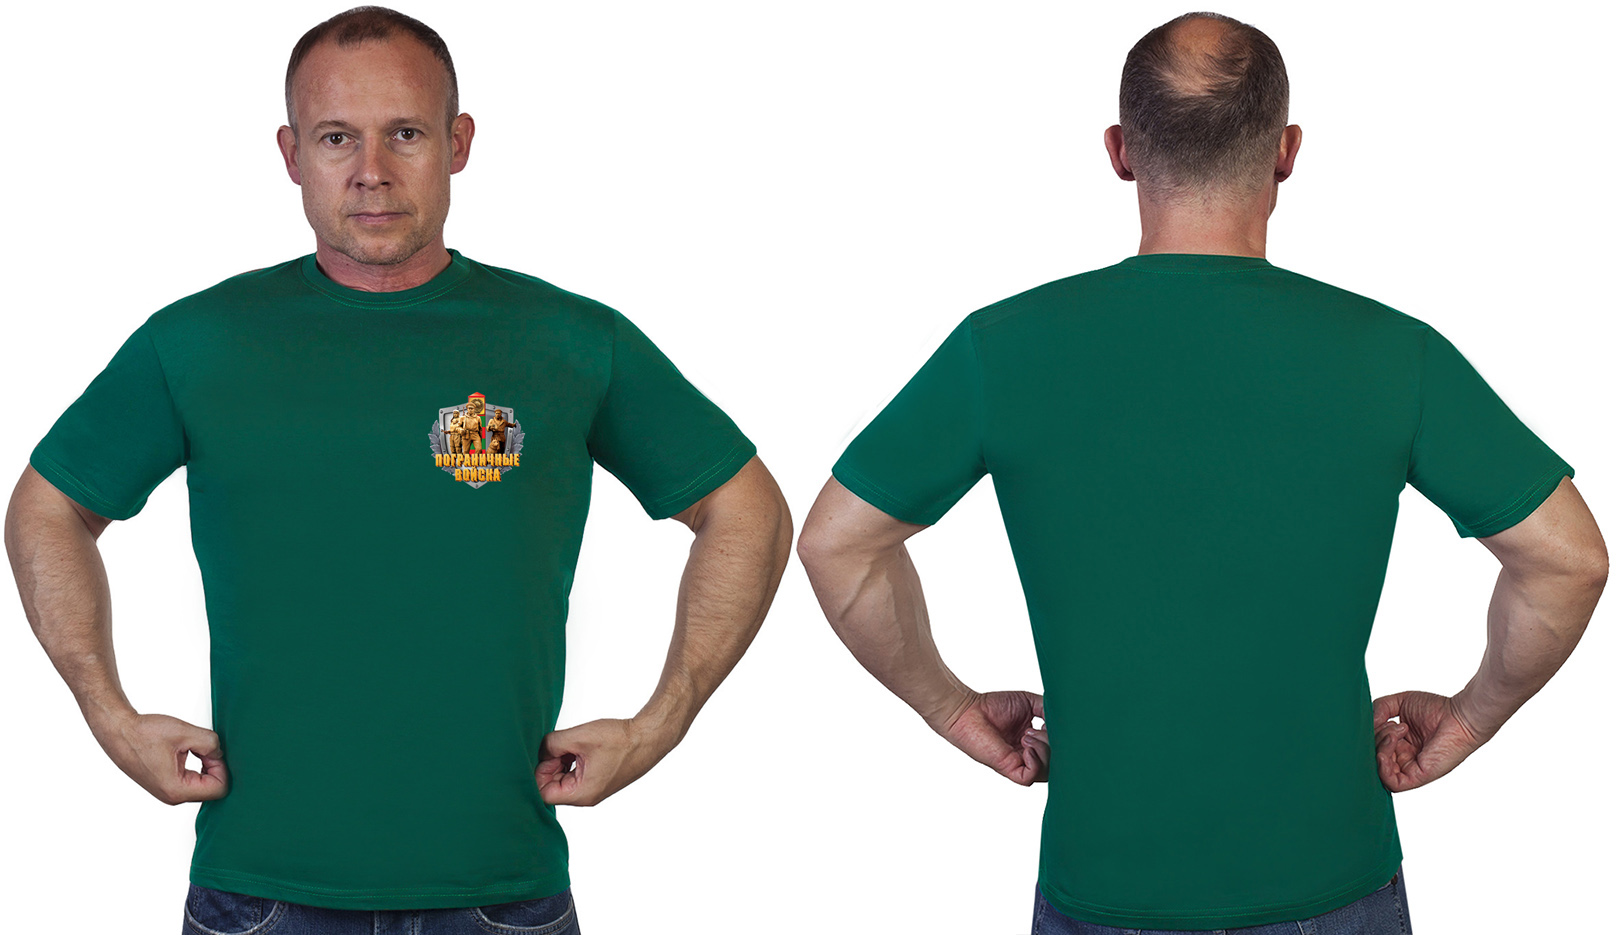 Зелёная футболка с термотрансфером "Пограничные Войска" - в розницу и оптом